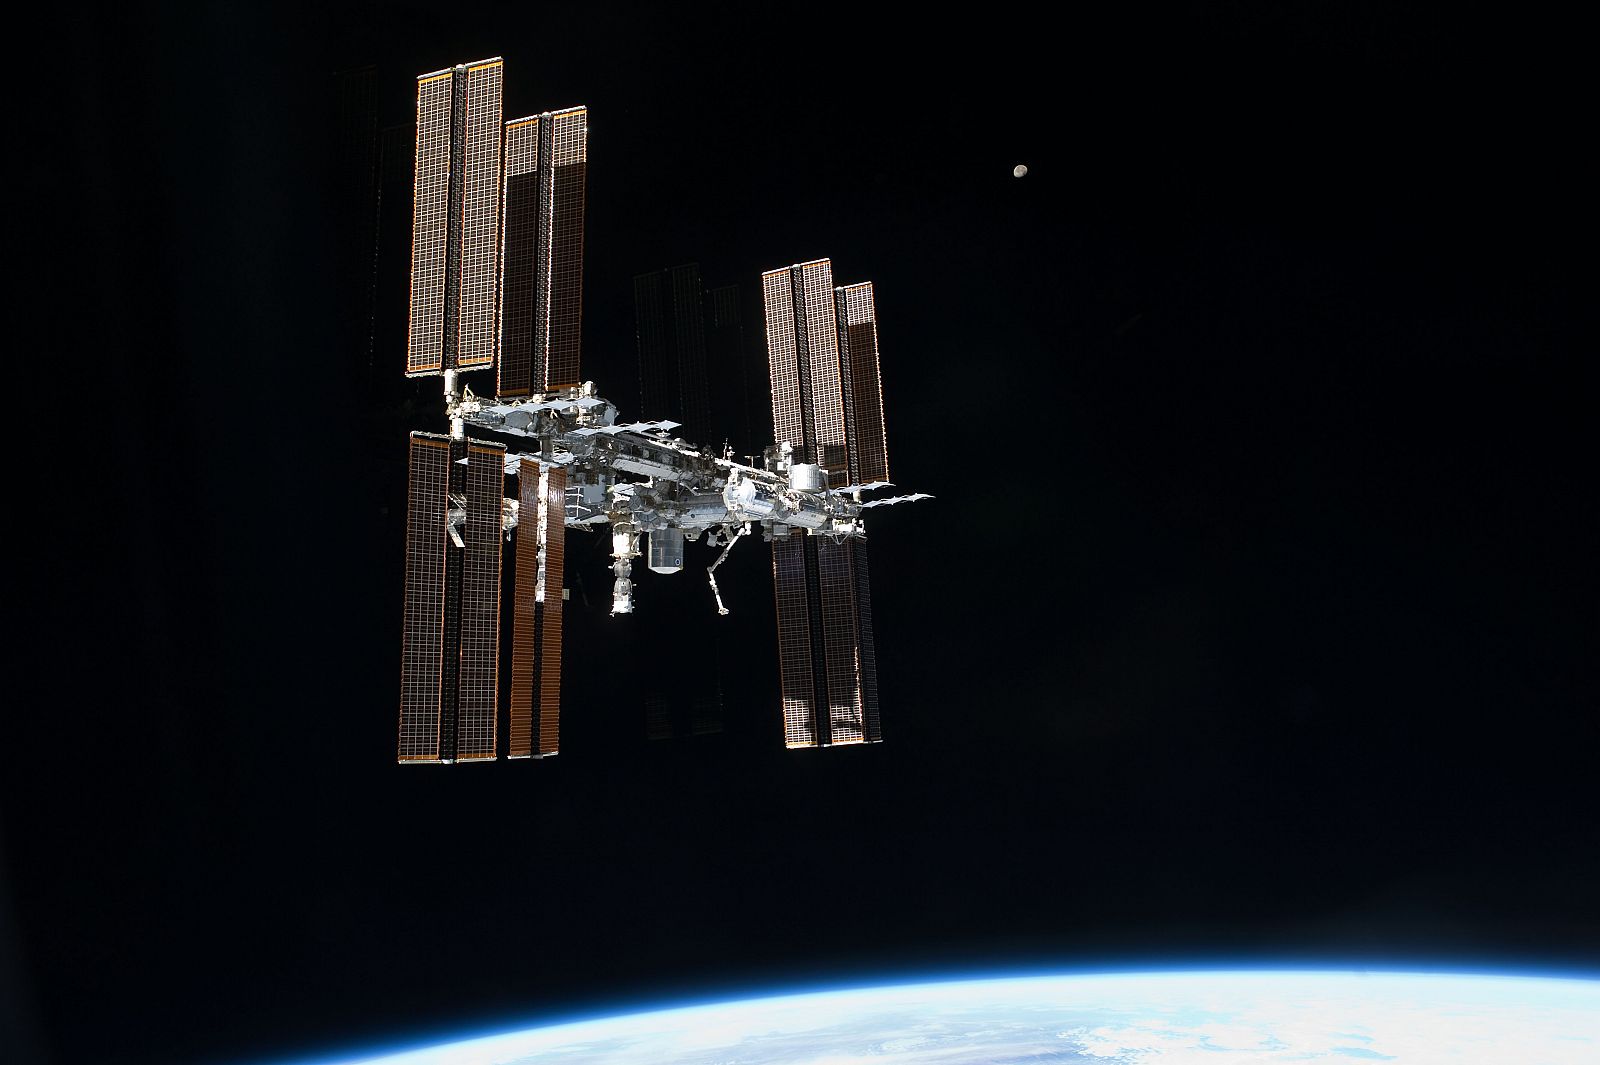 Configuración actual de la Estación Espacial Internacional desde el trasbordador espacial Atlantis.